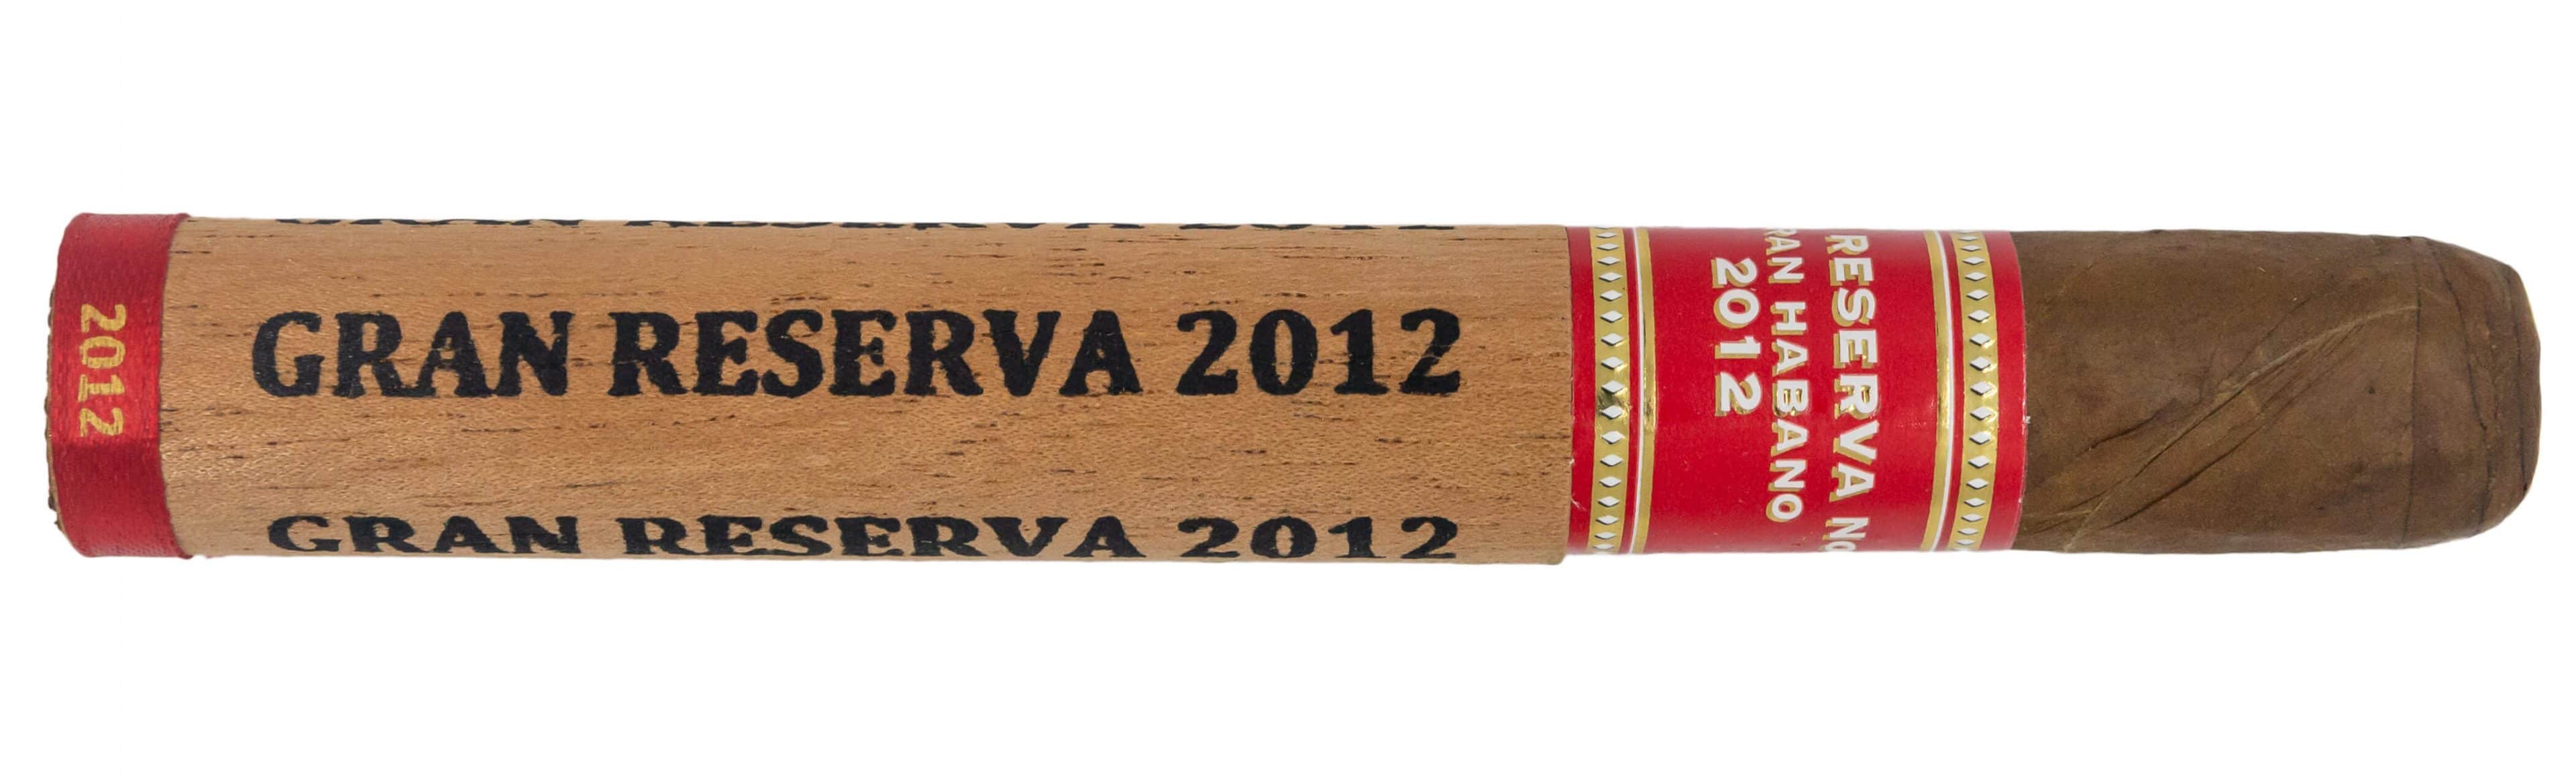 Blind Cigar Review: Gran Habano | Corojo #5 Gran Reserva 2012 Corona Gorda